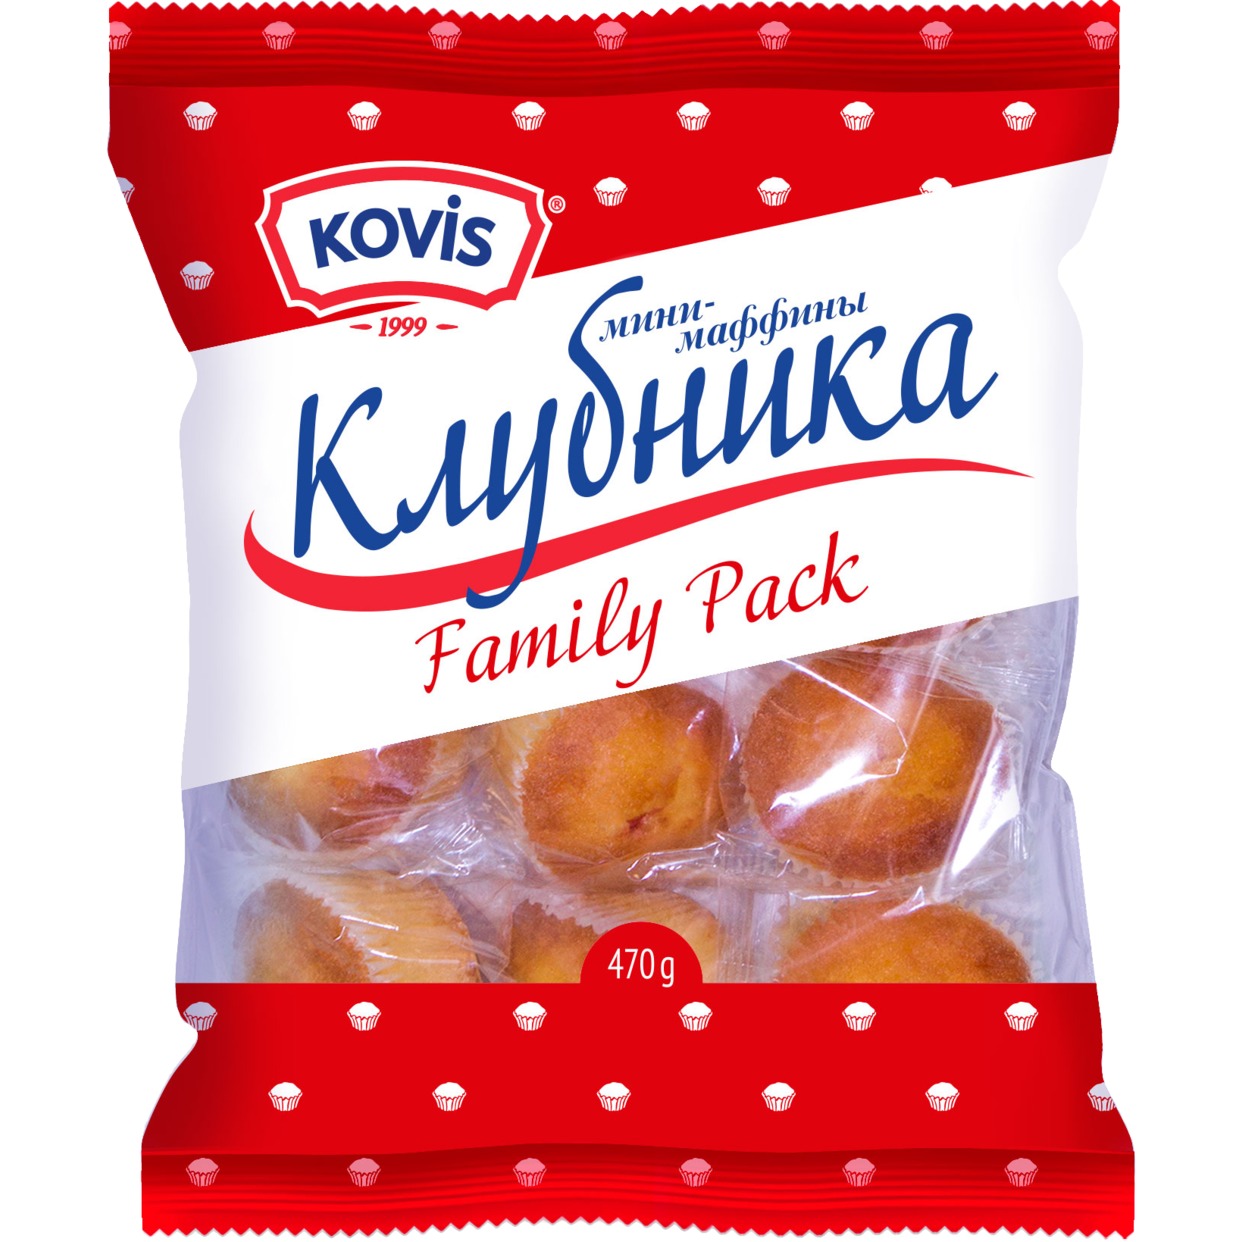 Изделия хлебобулочные сдобные "Мини-маффины" под товарным знаком "KOVIS" с фруктово-ягодной начинкой клубника 470г, шт